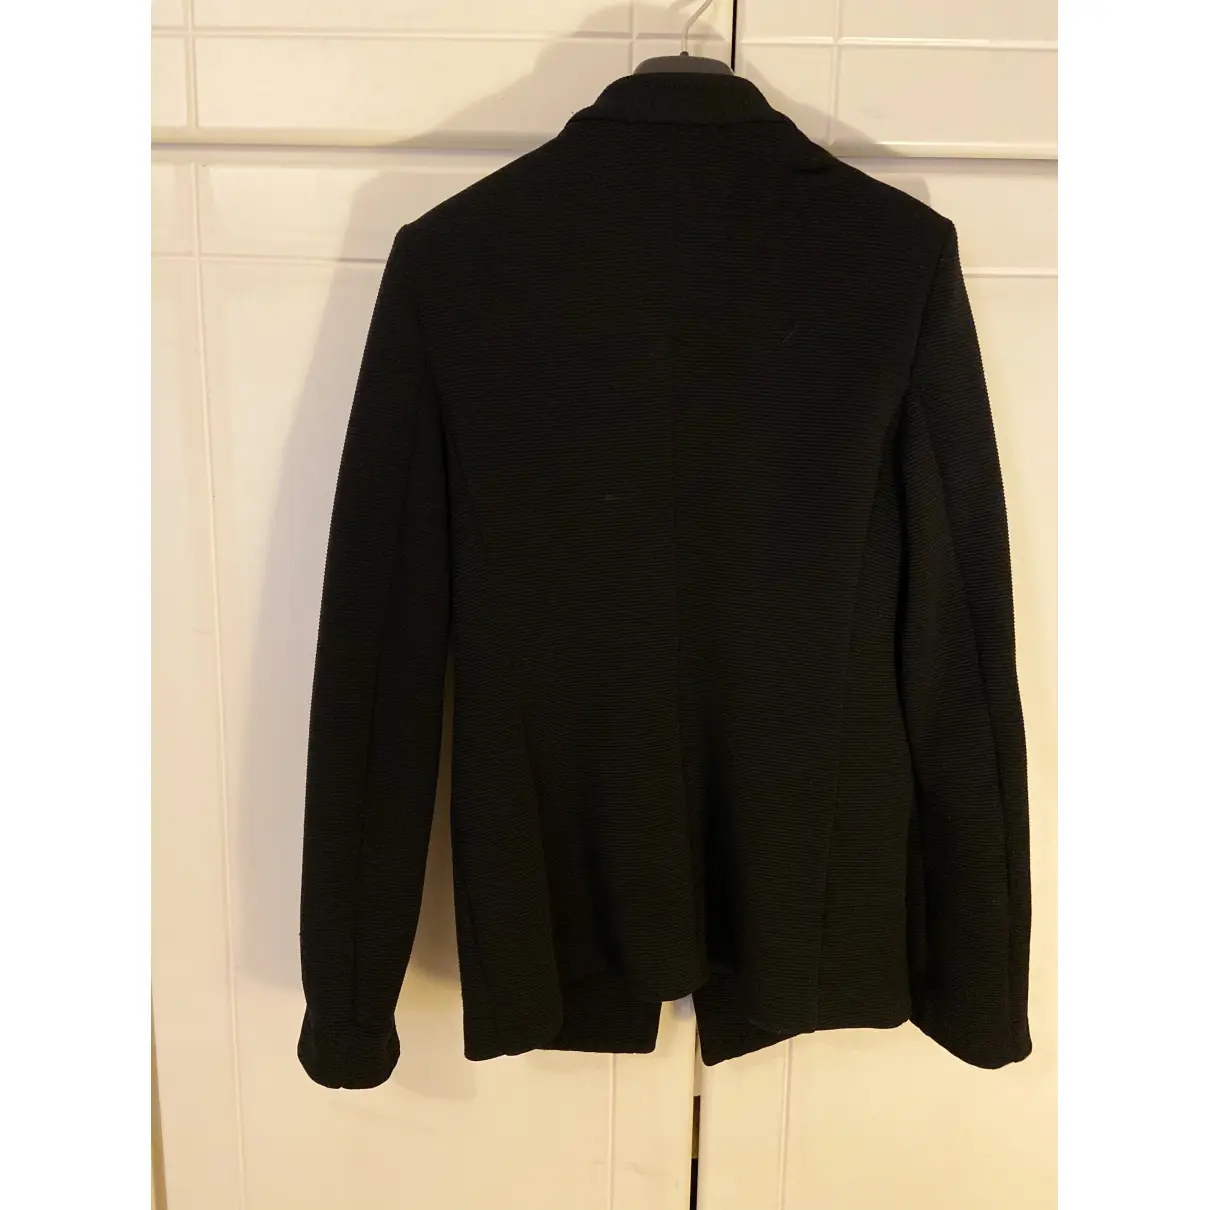 Buy Emporio Armani Black Viscose Jacket online